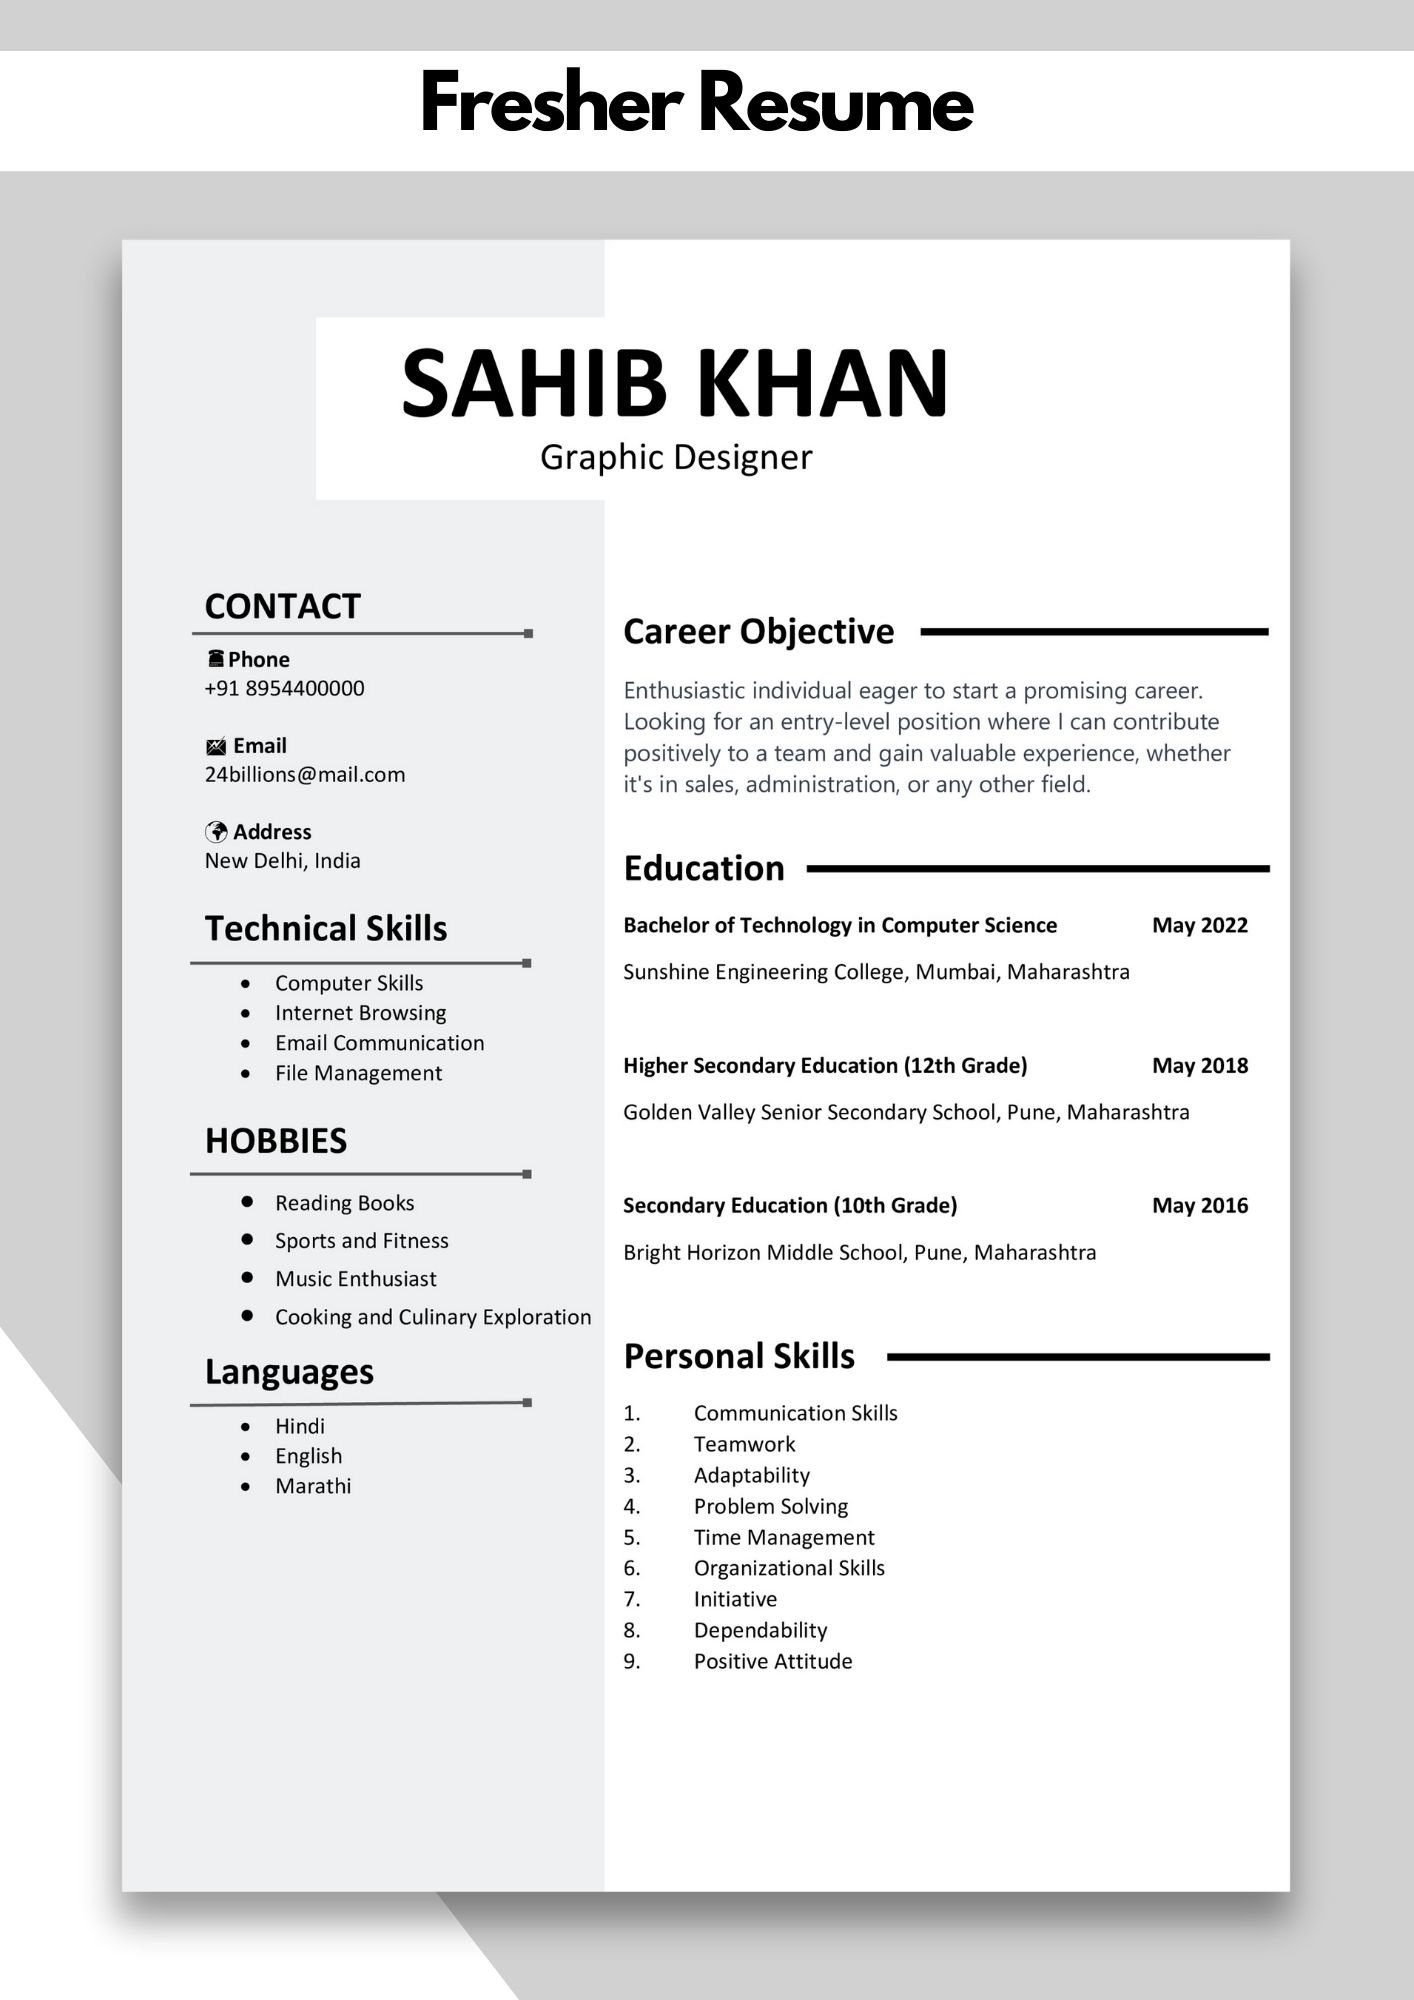 Fresher Resume Template | Fresher Resume Template Word/pdf